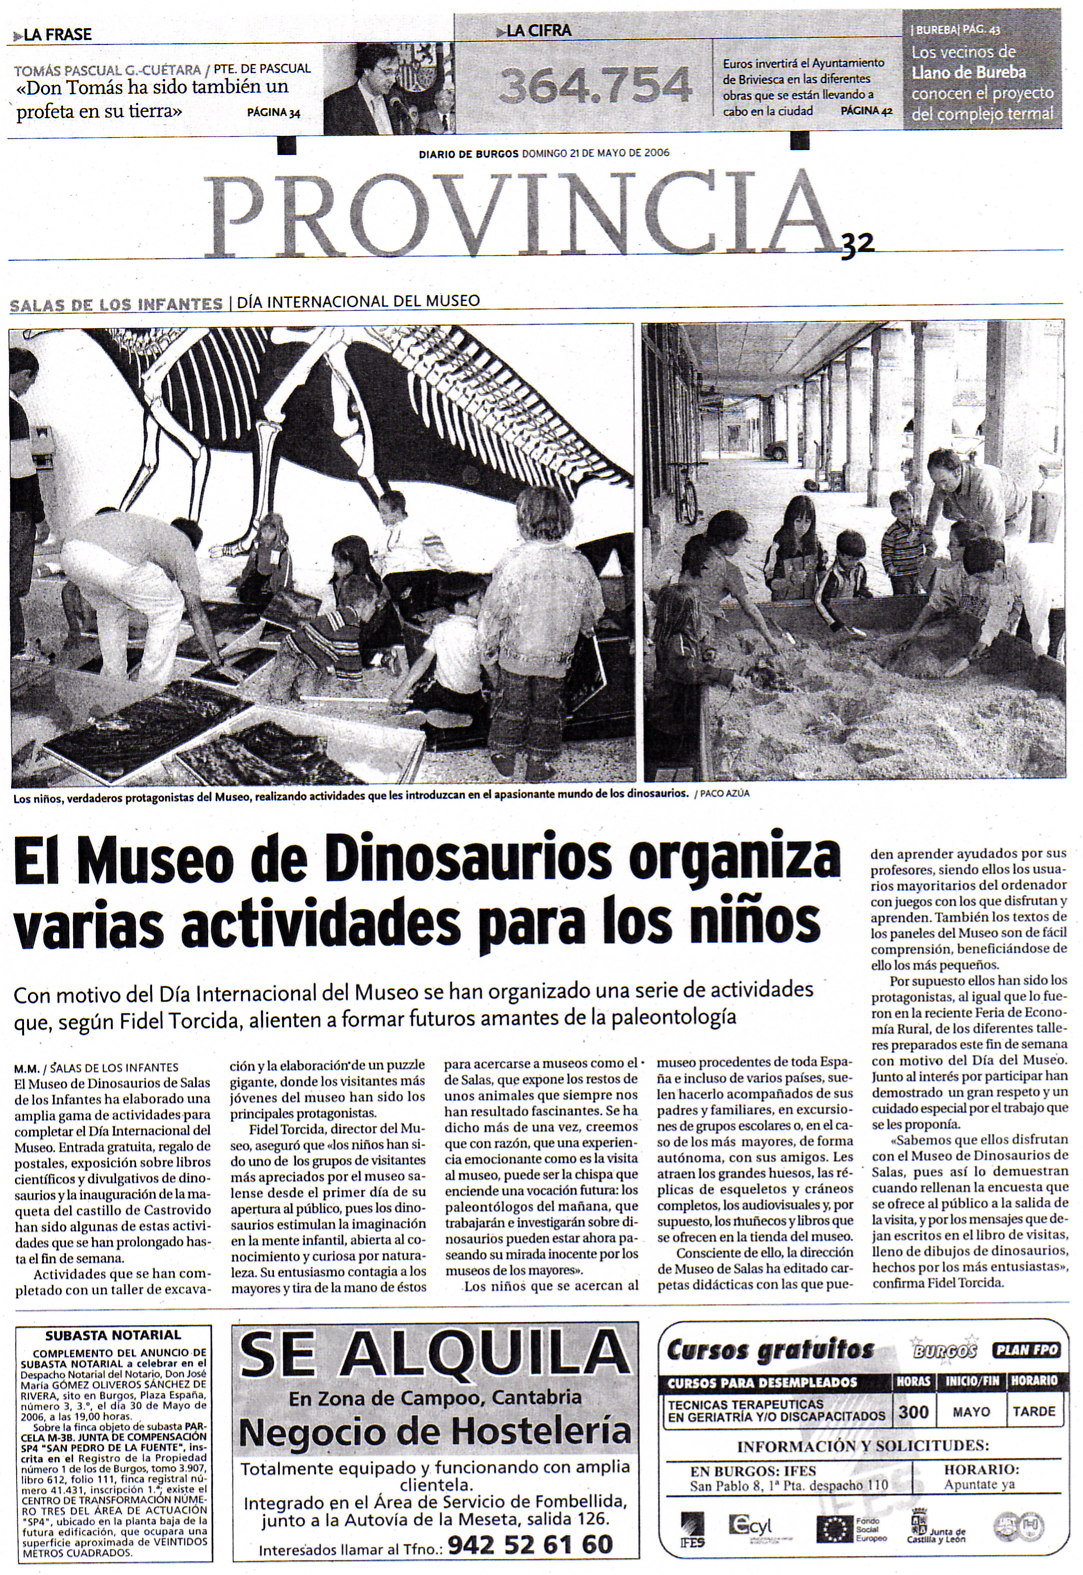 Noticias externas 21 de mayo de 2006, El Diario de Burgos: El Museo de  Dinosaurios organizavarias actividades para los niños | dinosaurios,paleontologia,salas  de los infantes, burgos, españa, museo | Fundación Dinosaurios Castilla